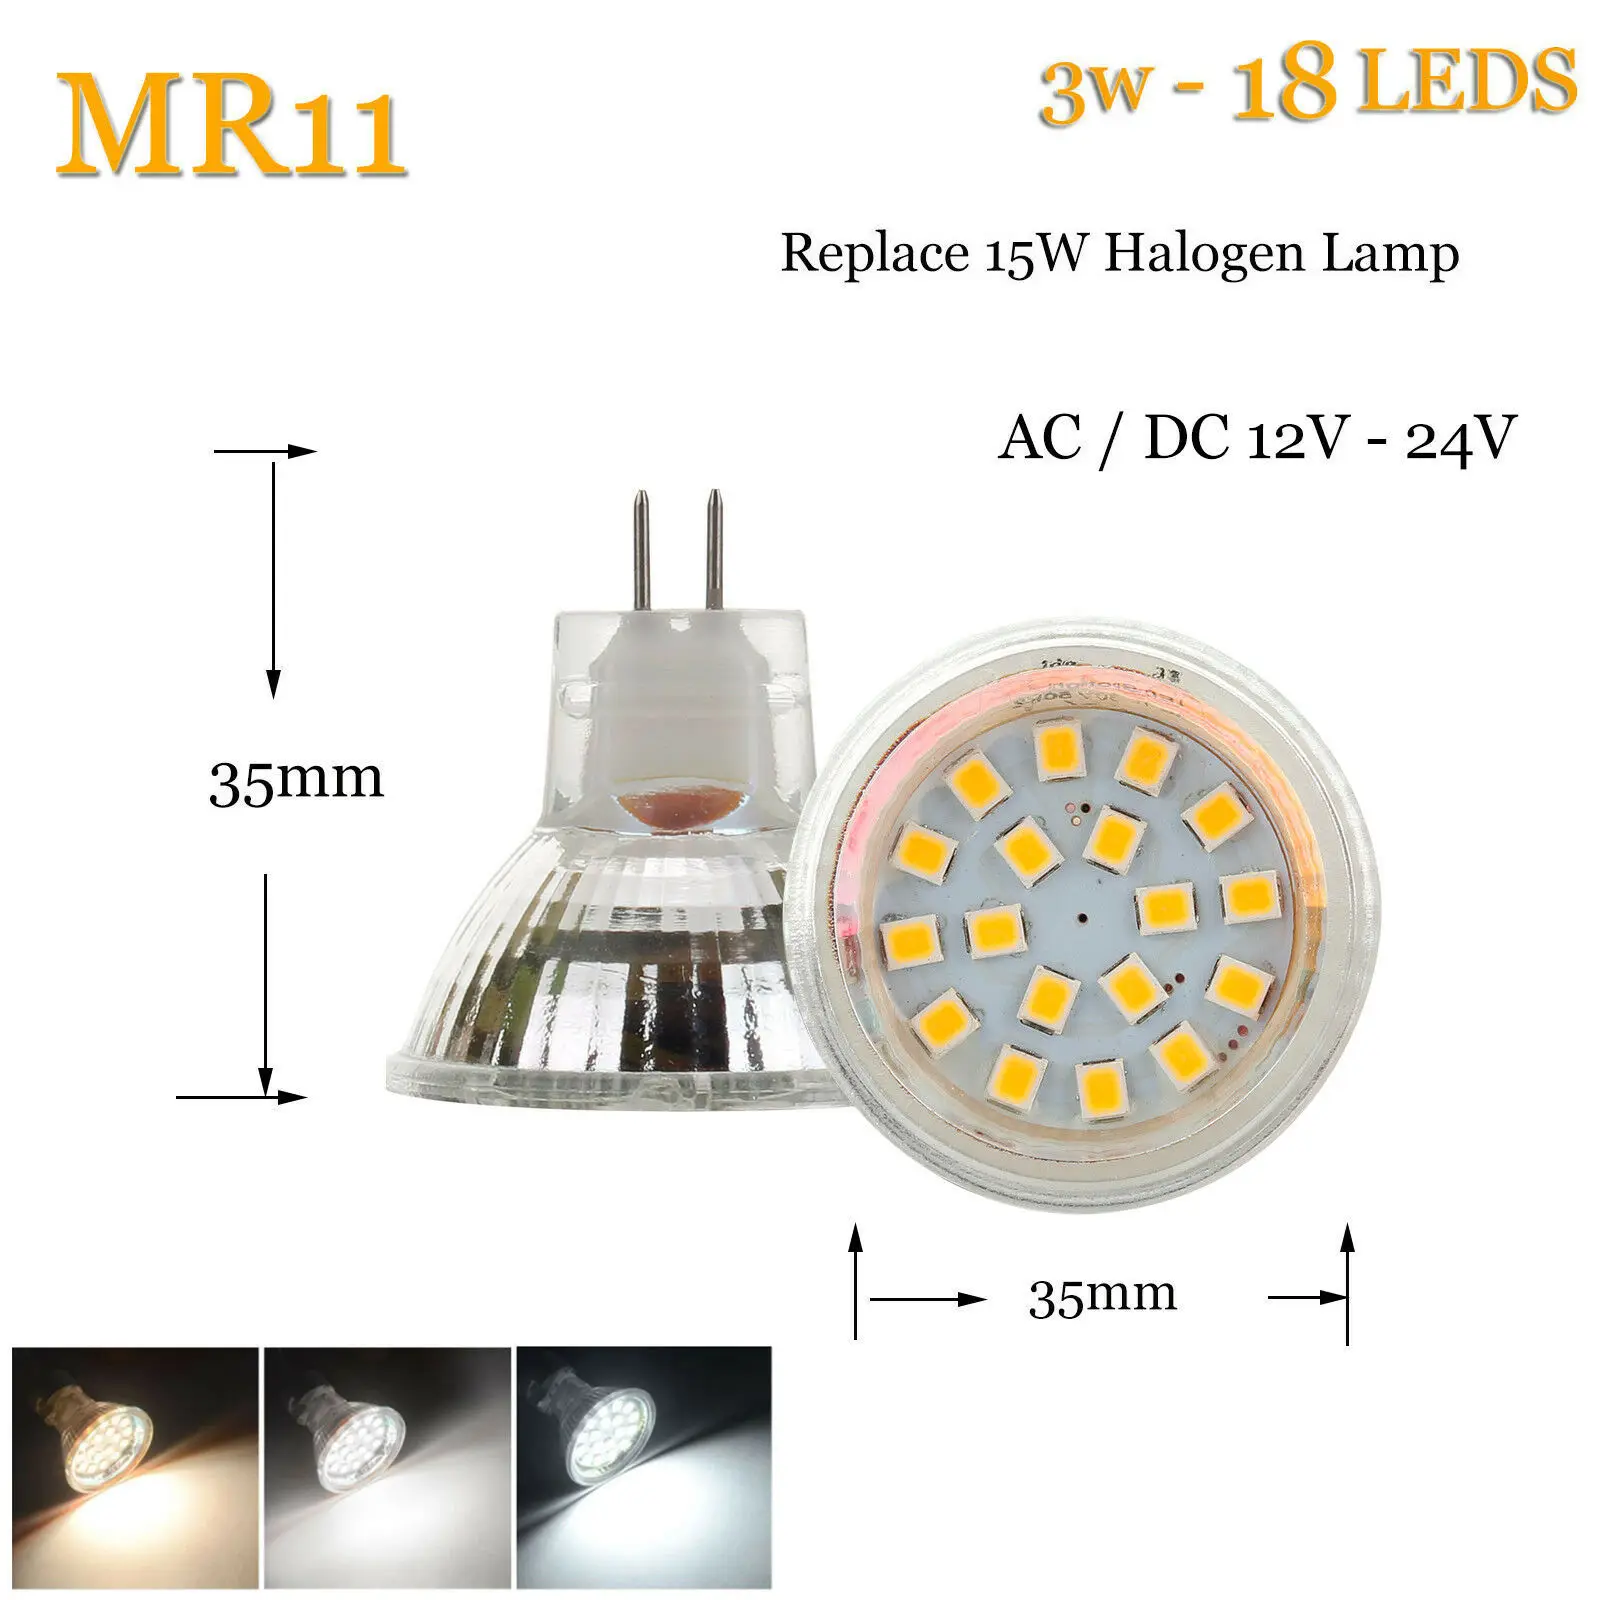 35 мм светодиодный лампочка MR11 GU4 2 Вт 3W 120LM 150LM светодиодный лампочка 2835 SMD теплый холодный нейтральный белый AC/DC12V-24V лампа замена галогенного освещения - Испускаемый цвет: 3W